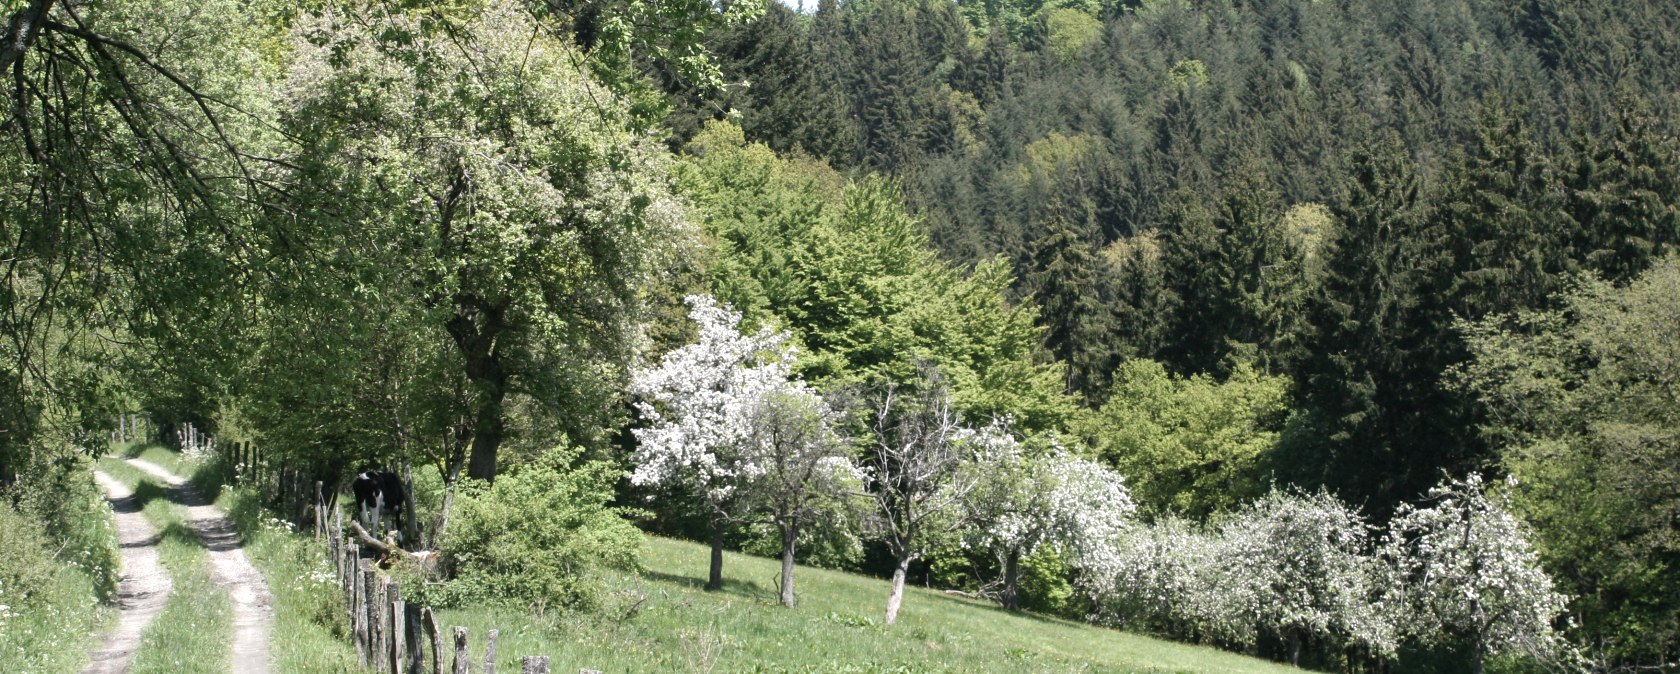 Obstbaumwiesen in Monschau-Höfen, © Heike Becker